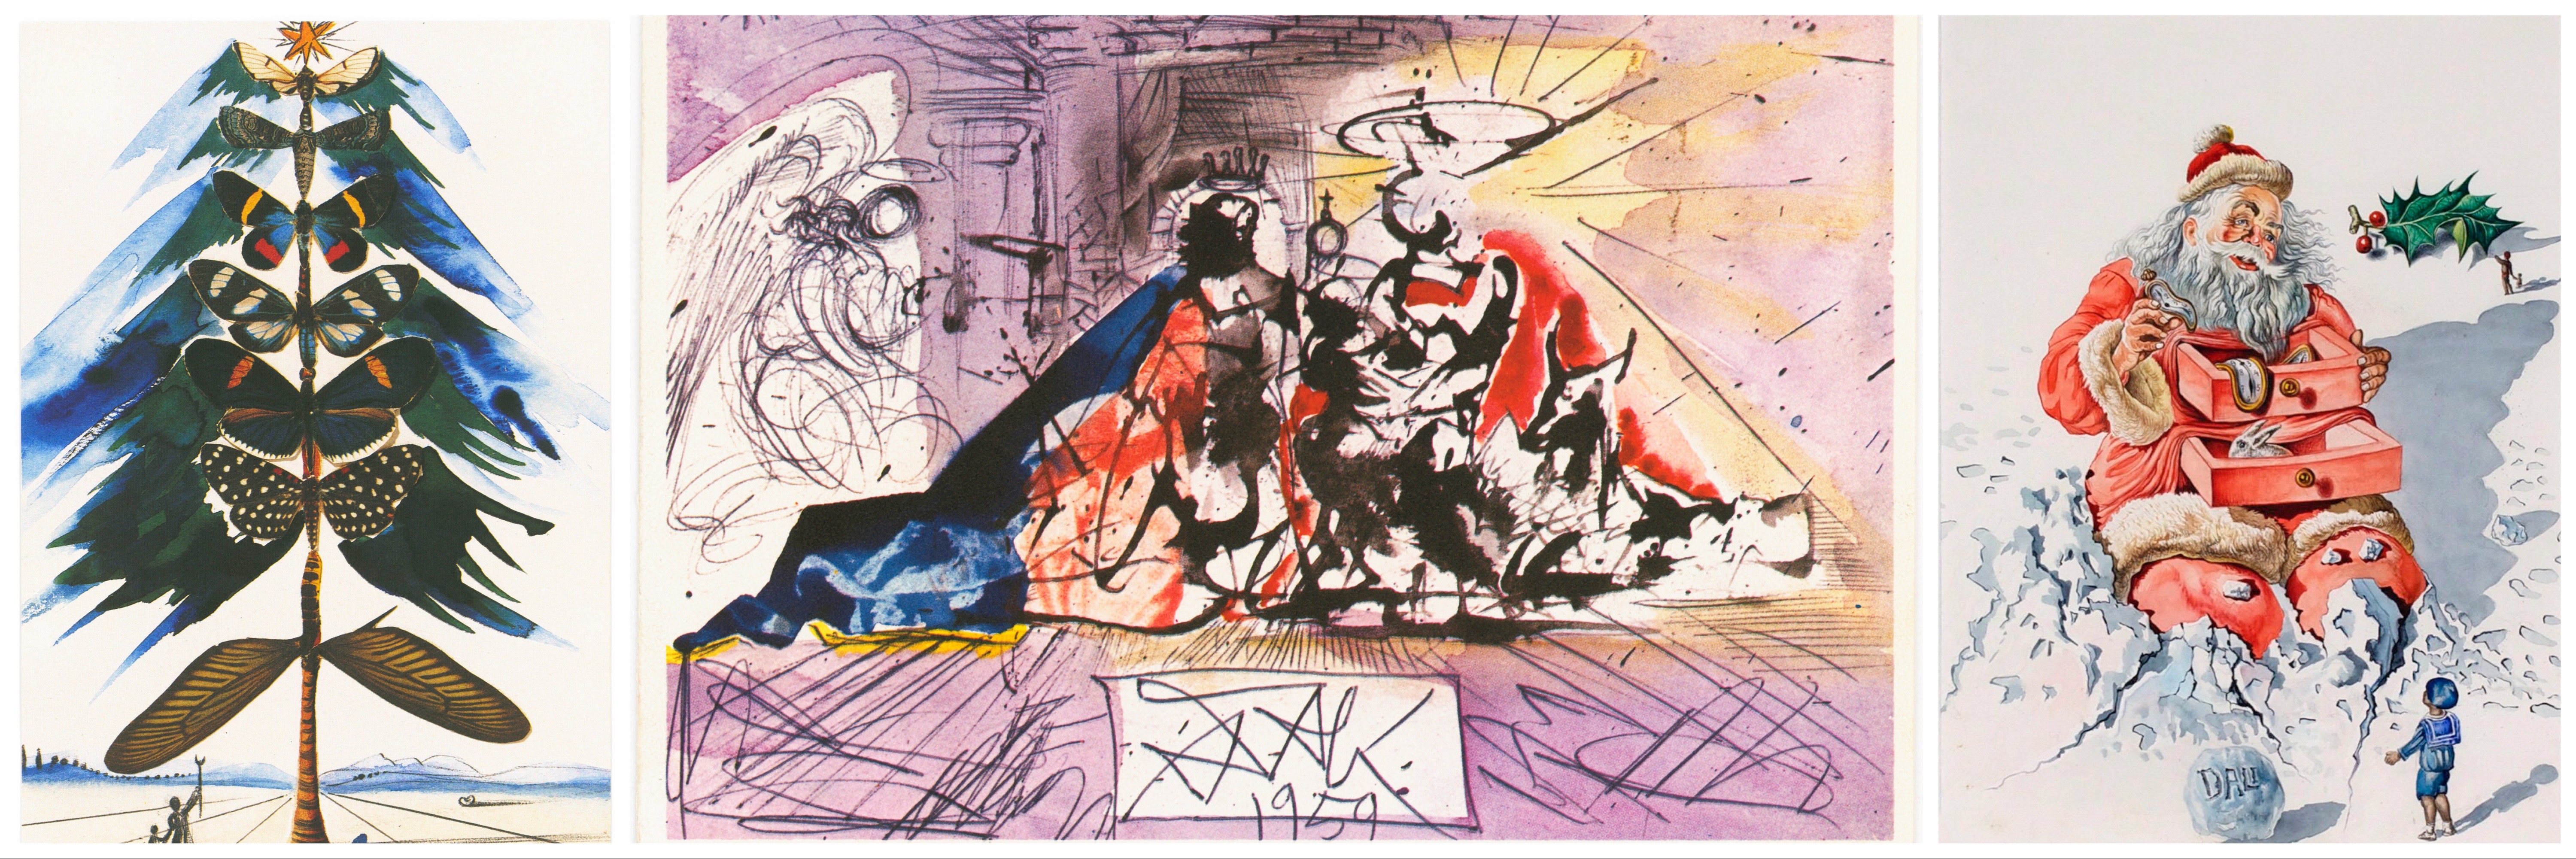 Salvador Dali 1959-es képeslaptervei, amiket a Hallmark megbízásából készített. A festményeket a maguk idején túl radikálisnak tartották az átlagvásárlók, de az évtizedekkel később újranyomott példányokat az utolsó darabig elkapkodták.